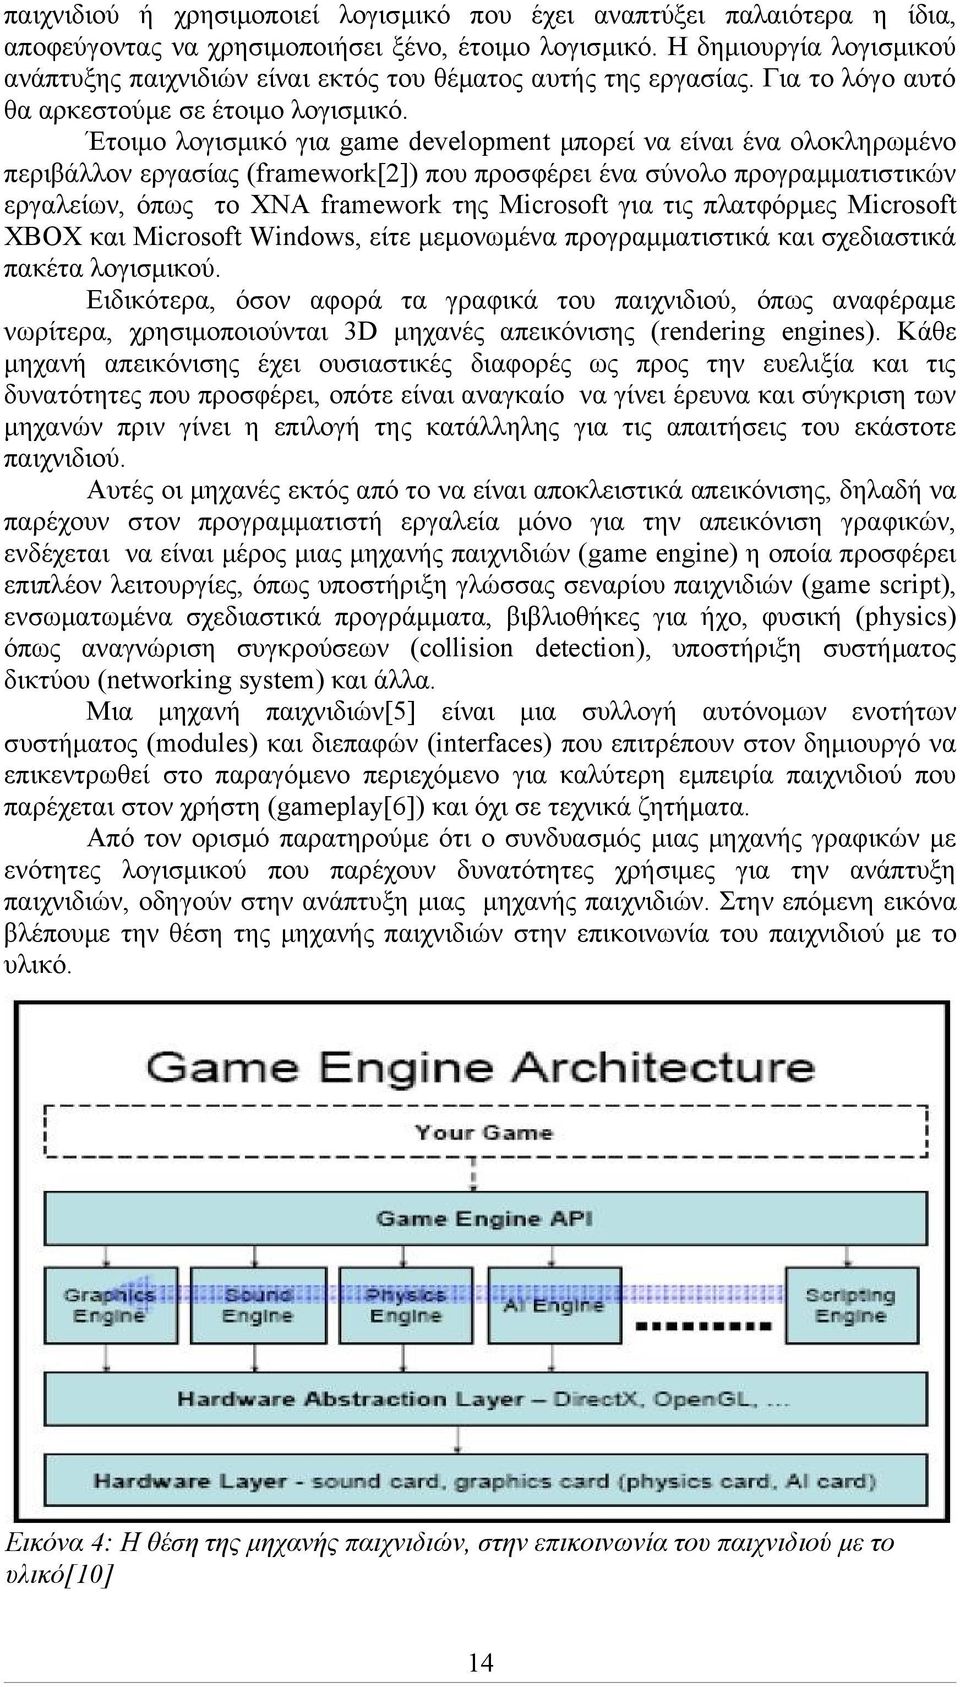 Έτοιμο λογισμικό για game development μπορεί να είναι ένα ολοκληρωμένο περιβάλλον εργασίας (framework[2]) που προσφέρει ένα σύνολο προγραμματιστικών εργαλείων, όπως το XNA framework της Microsoft για